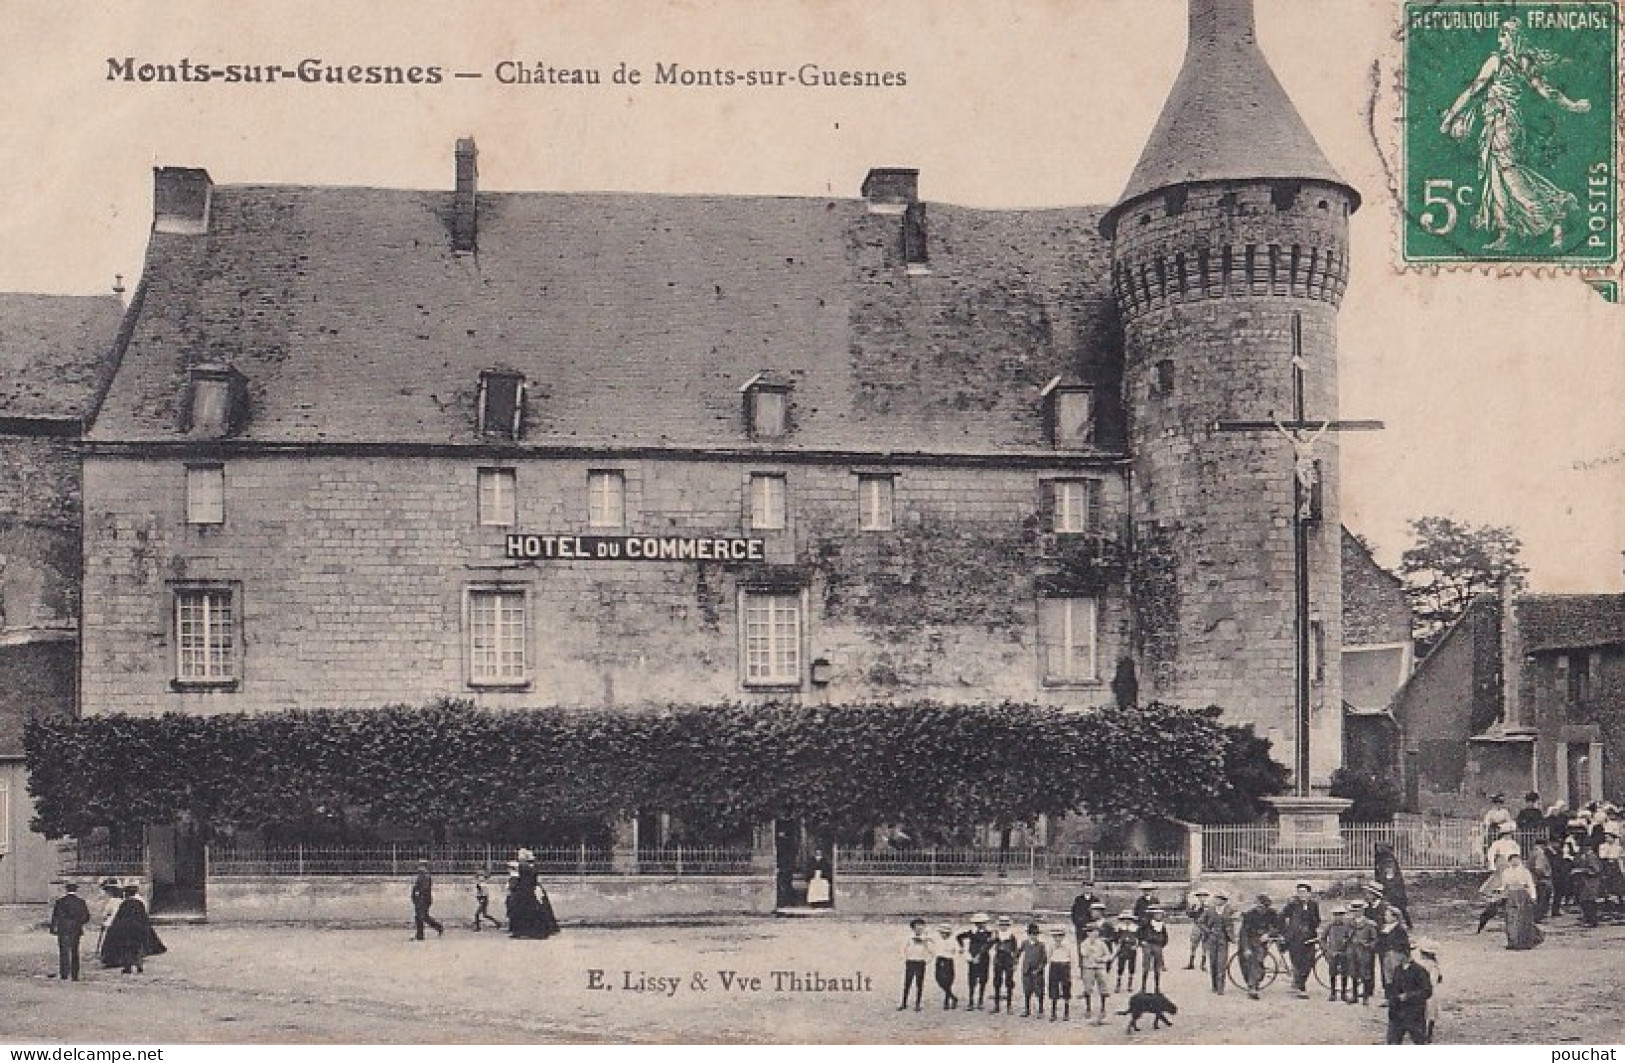 I12-86) MONTS SUR GUESNES (VIENNE) CHATEAU DE MONTS SUR GUESNES - ANIMEE - HOTEL DU COMMERCE - EN 1909 - Monts Sur Guesnes